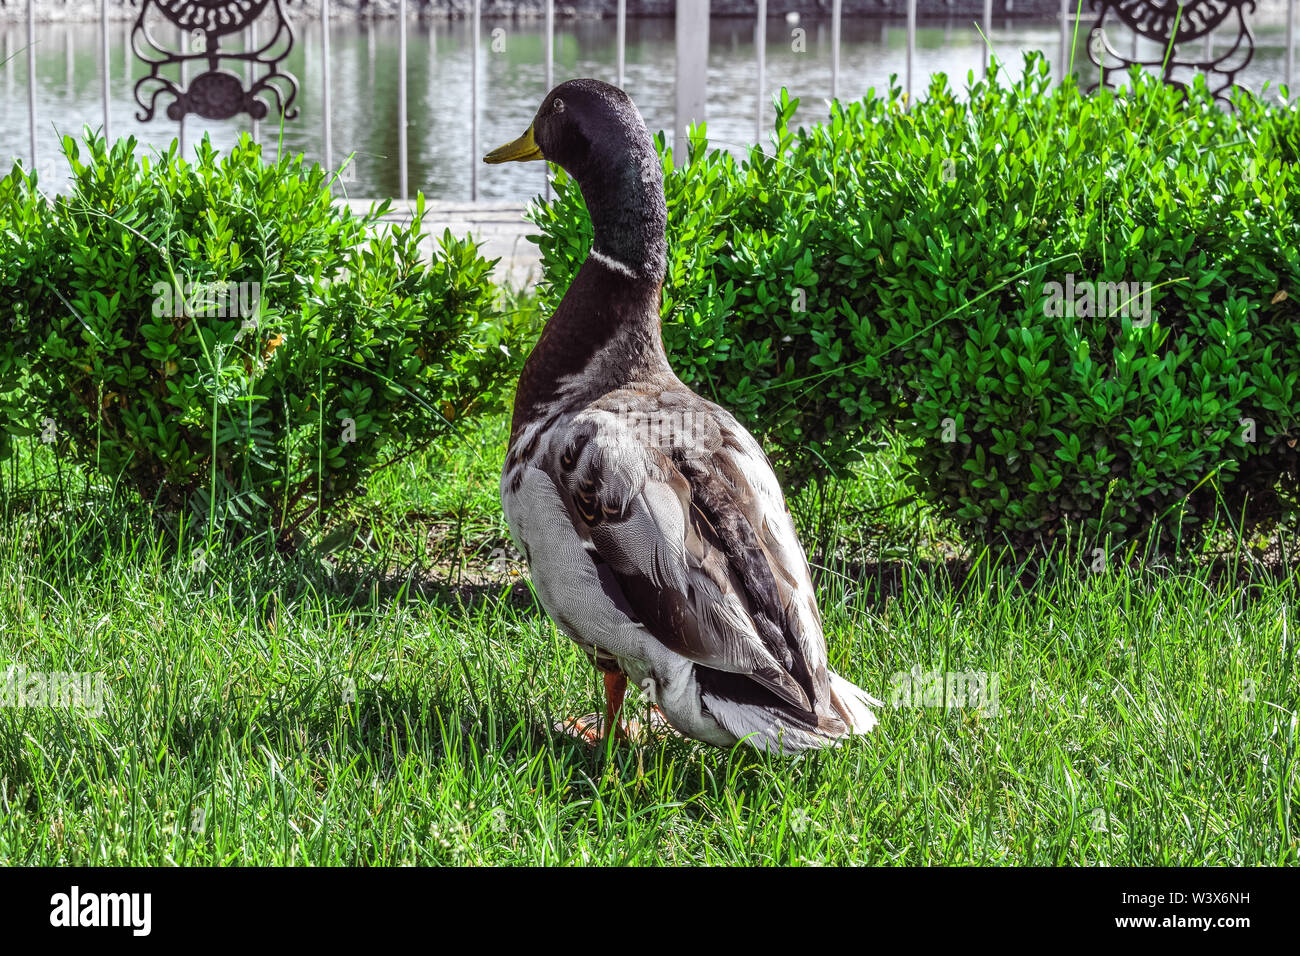 Eine Ente läuft auf einem grünen Rasen Stockfoto